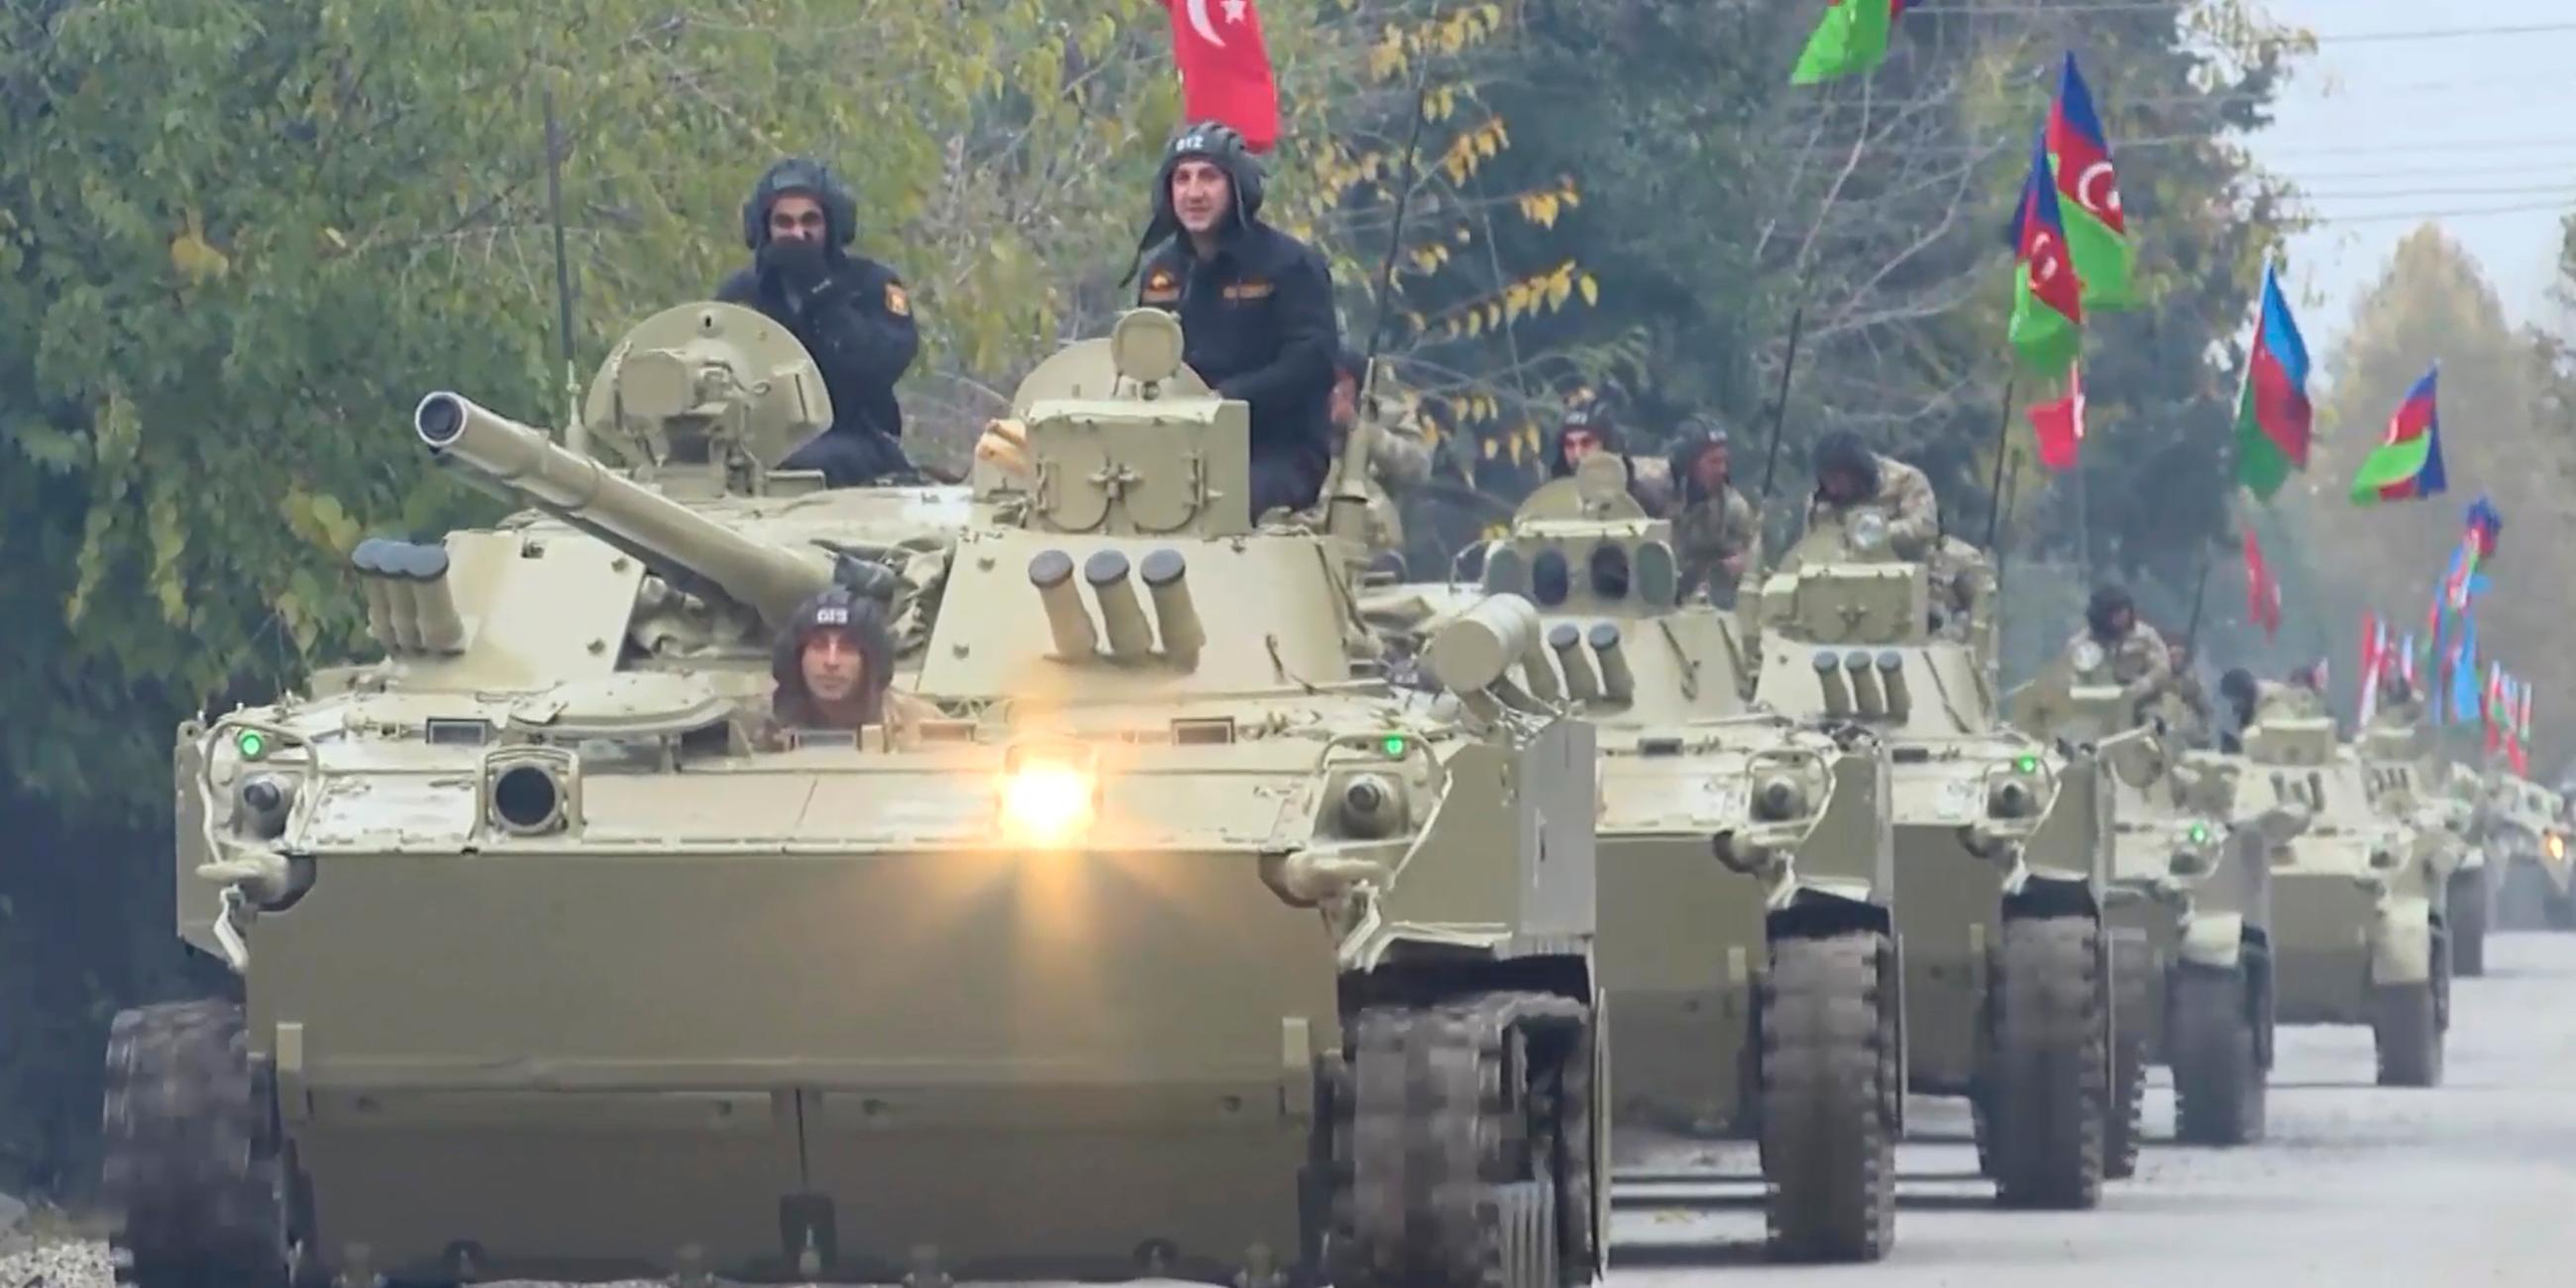 Berg-Karabach, Aghdam: In diesem Ausschnitt aus einem Video fahren Panzer der aserbaidschanischen Streitkräfte. Archivbild